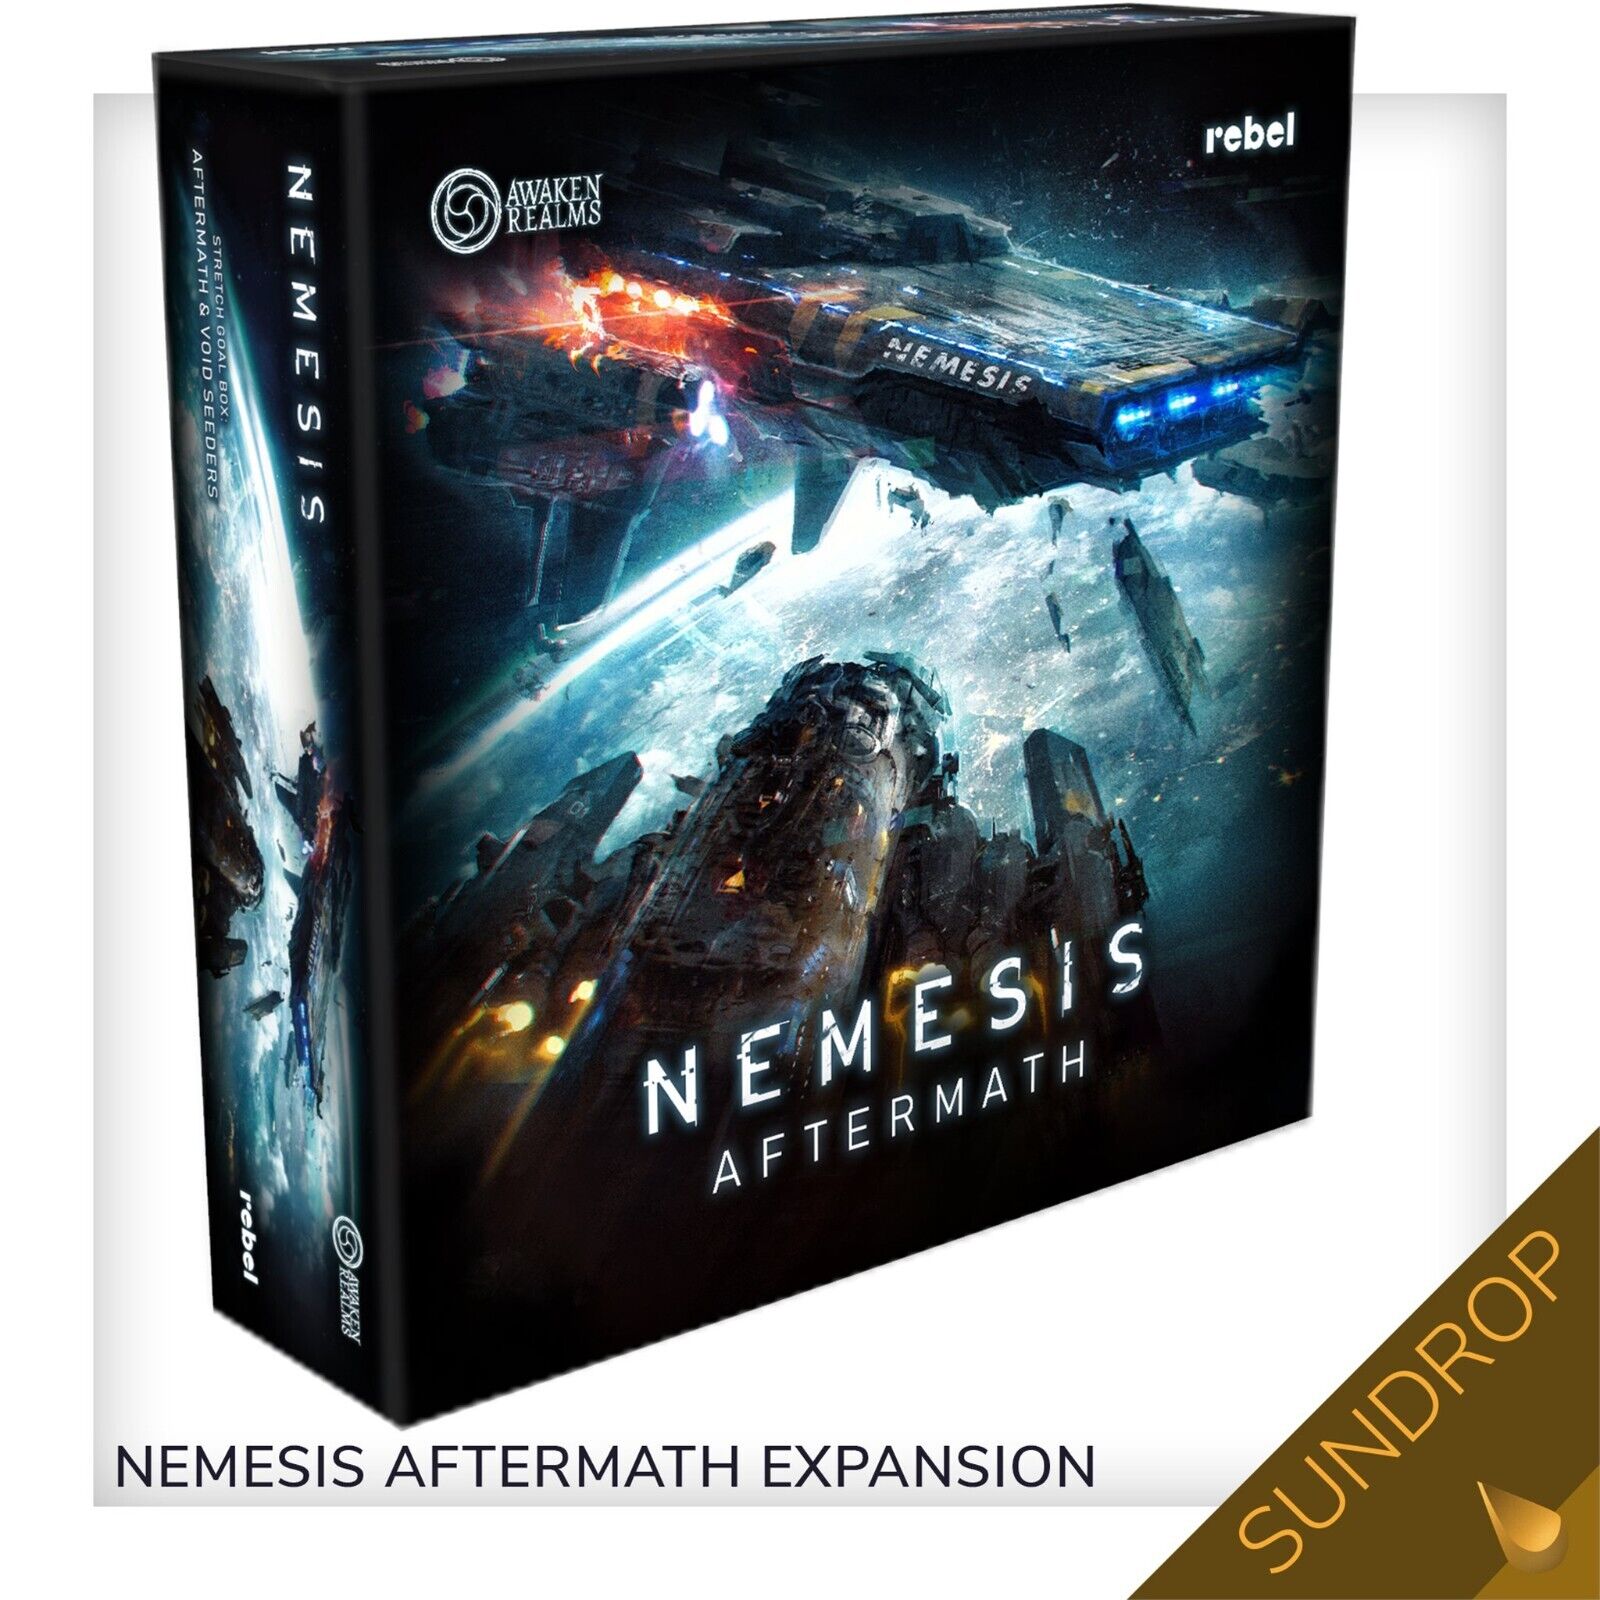 Nemesis Aftermath Expansion SUNDROP / Kickstarter Exclusive / Awaken Realms